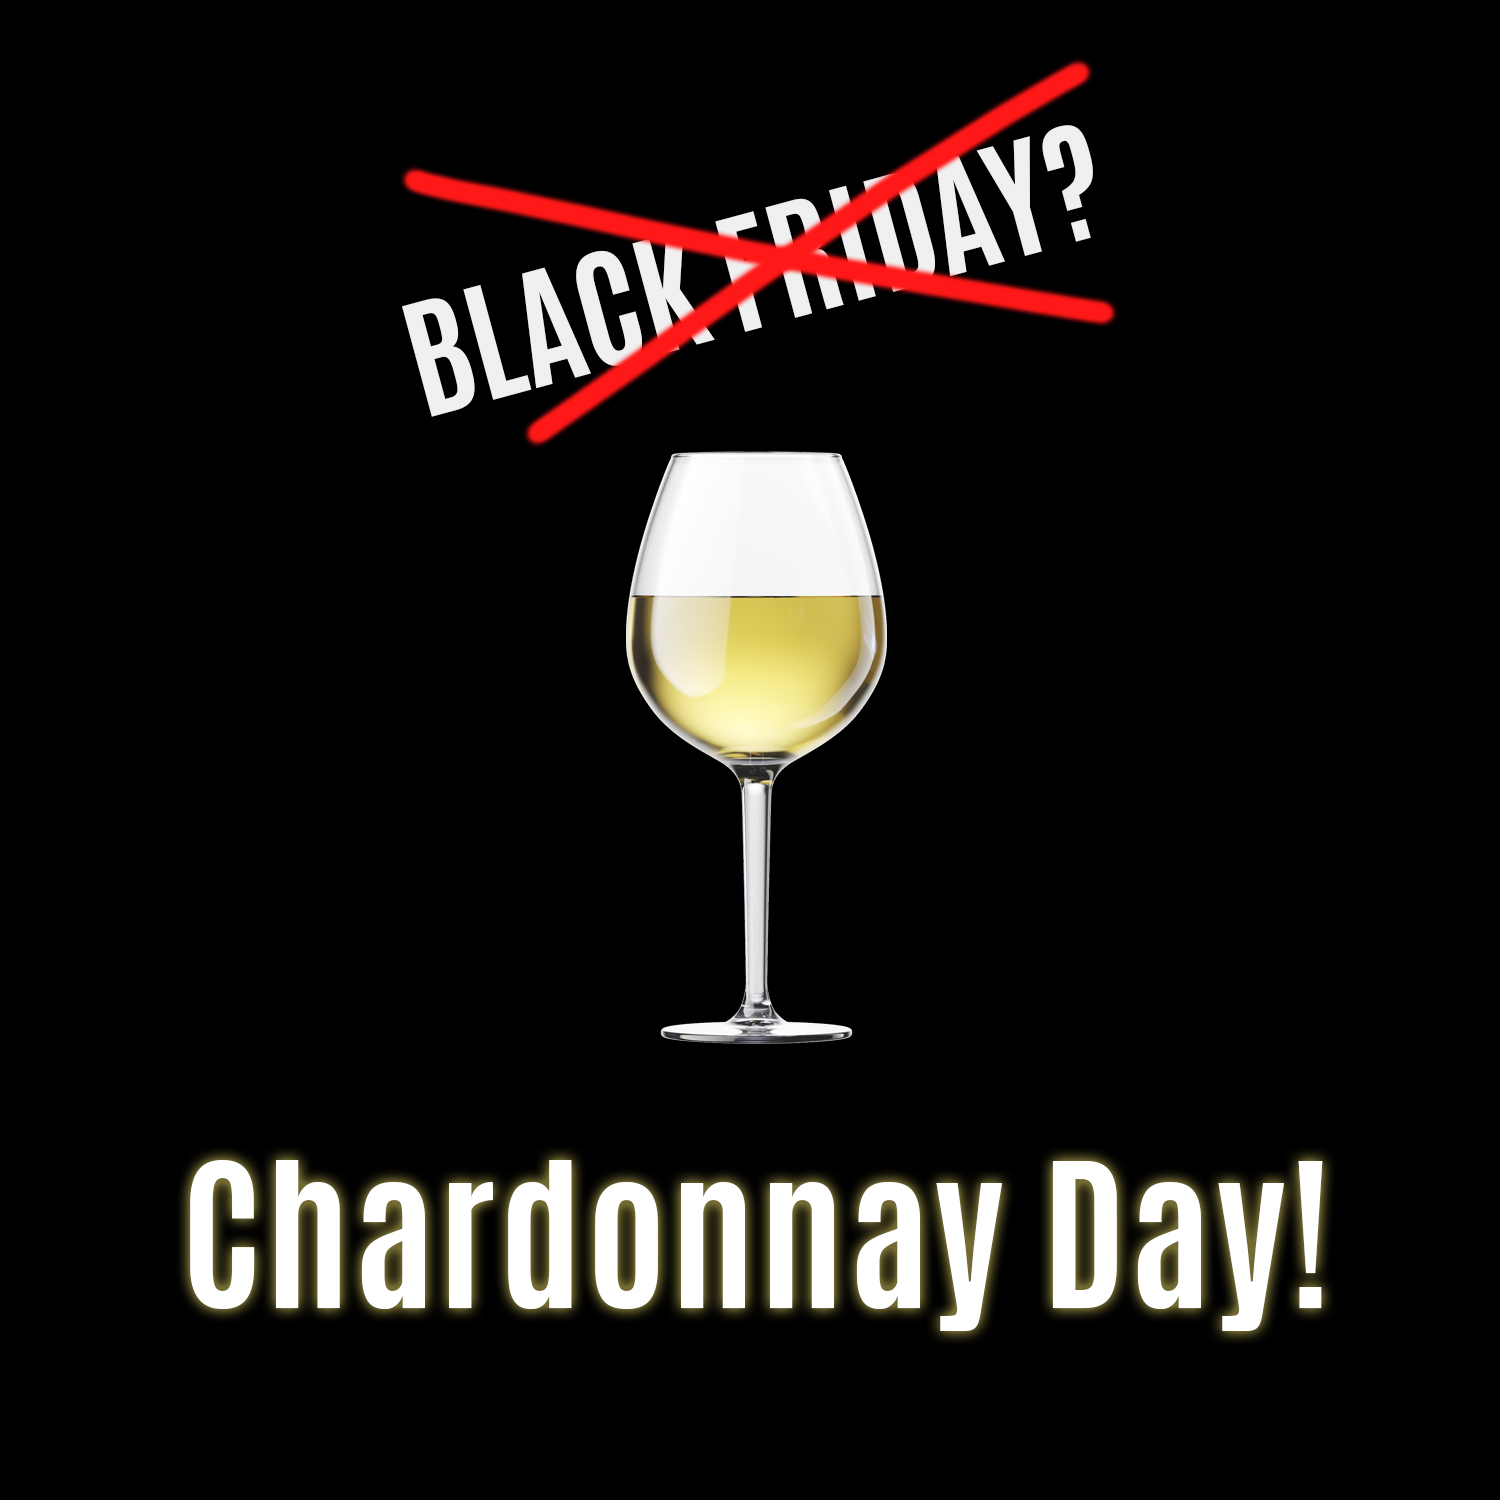 Black Friday? Chardonnay Day!